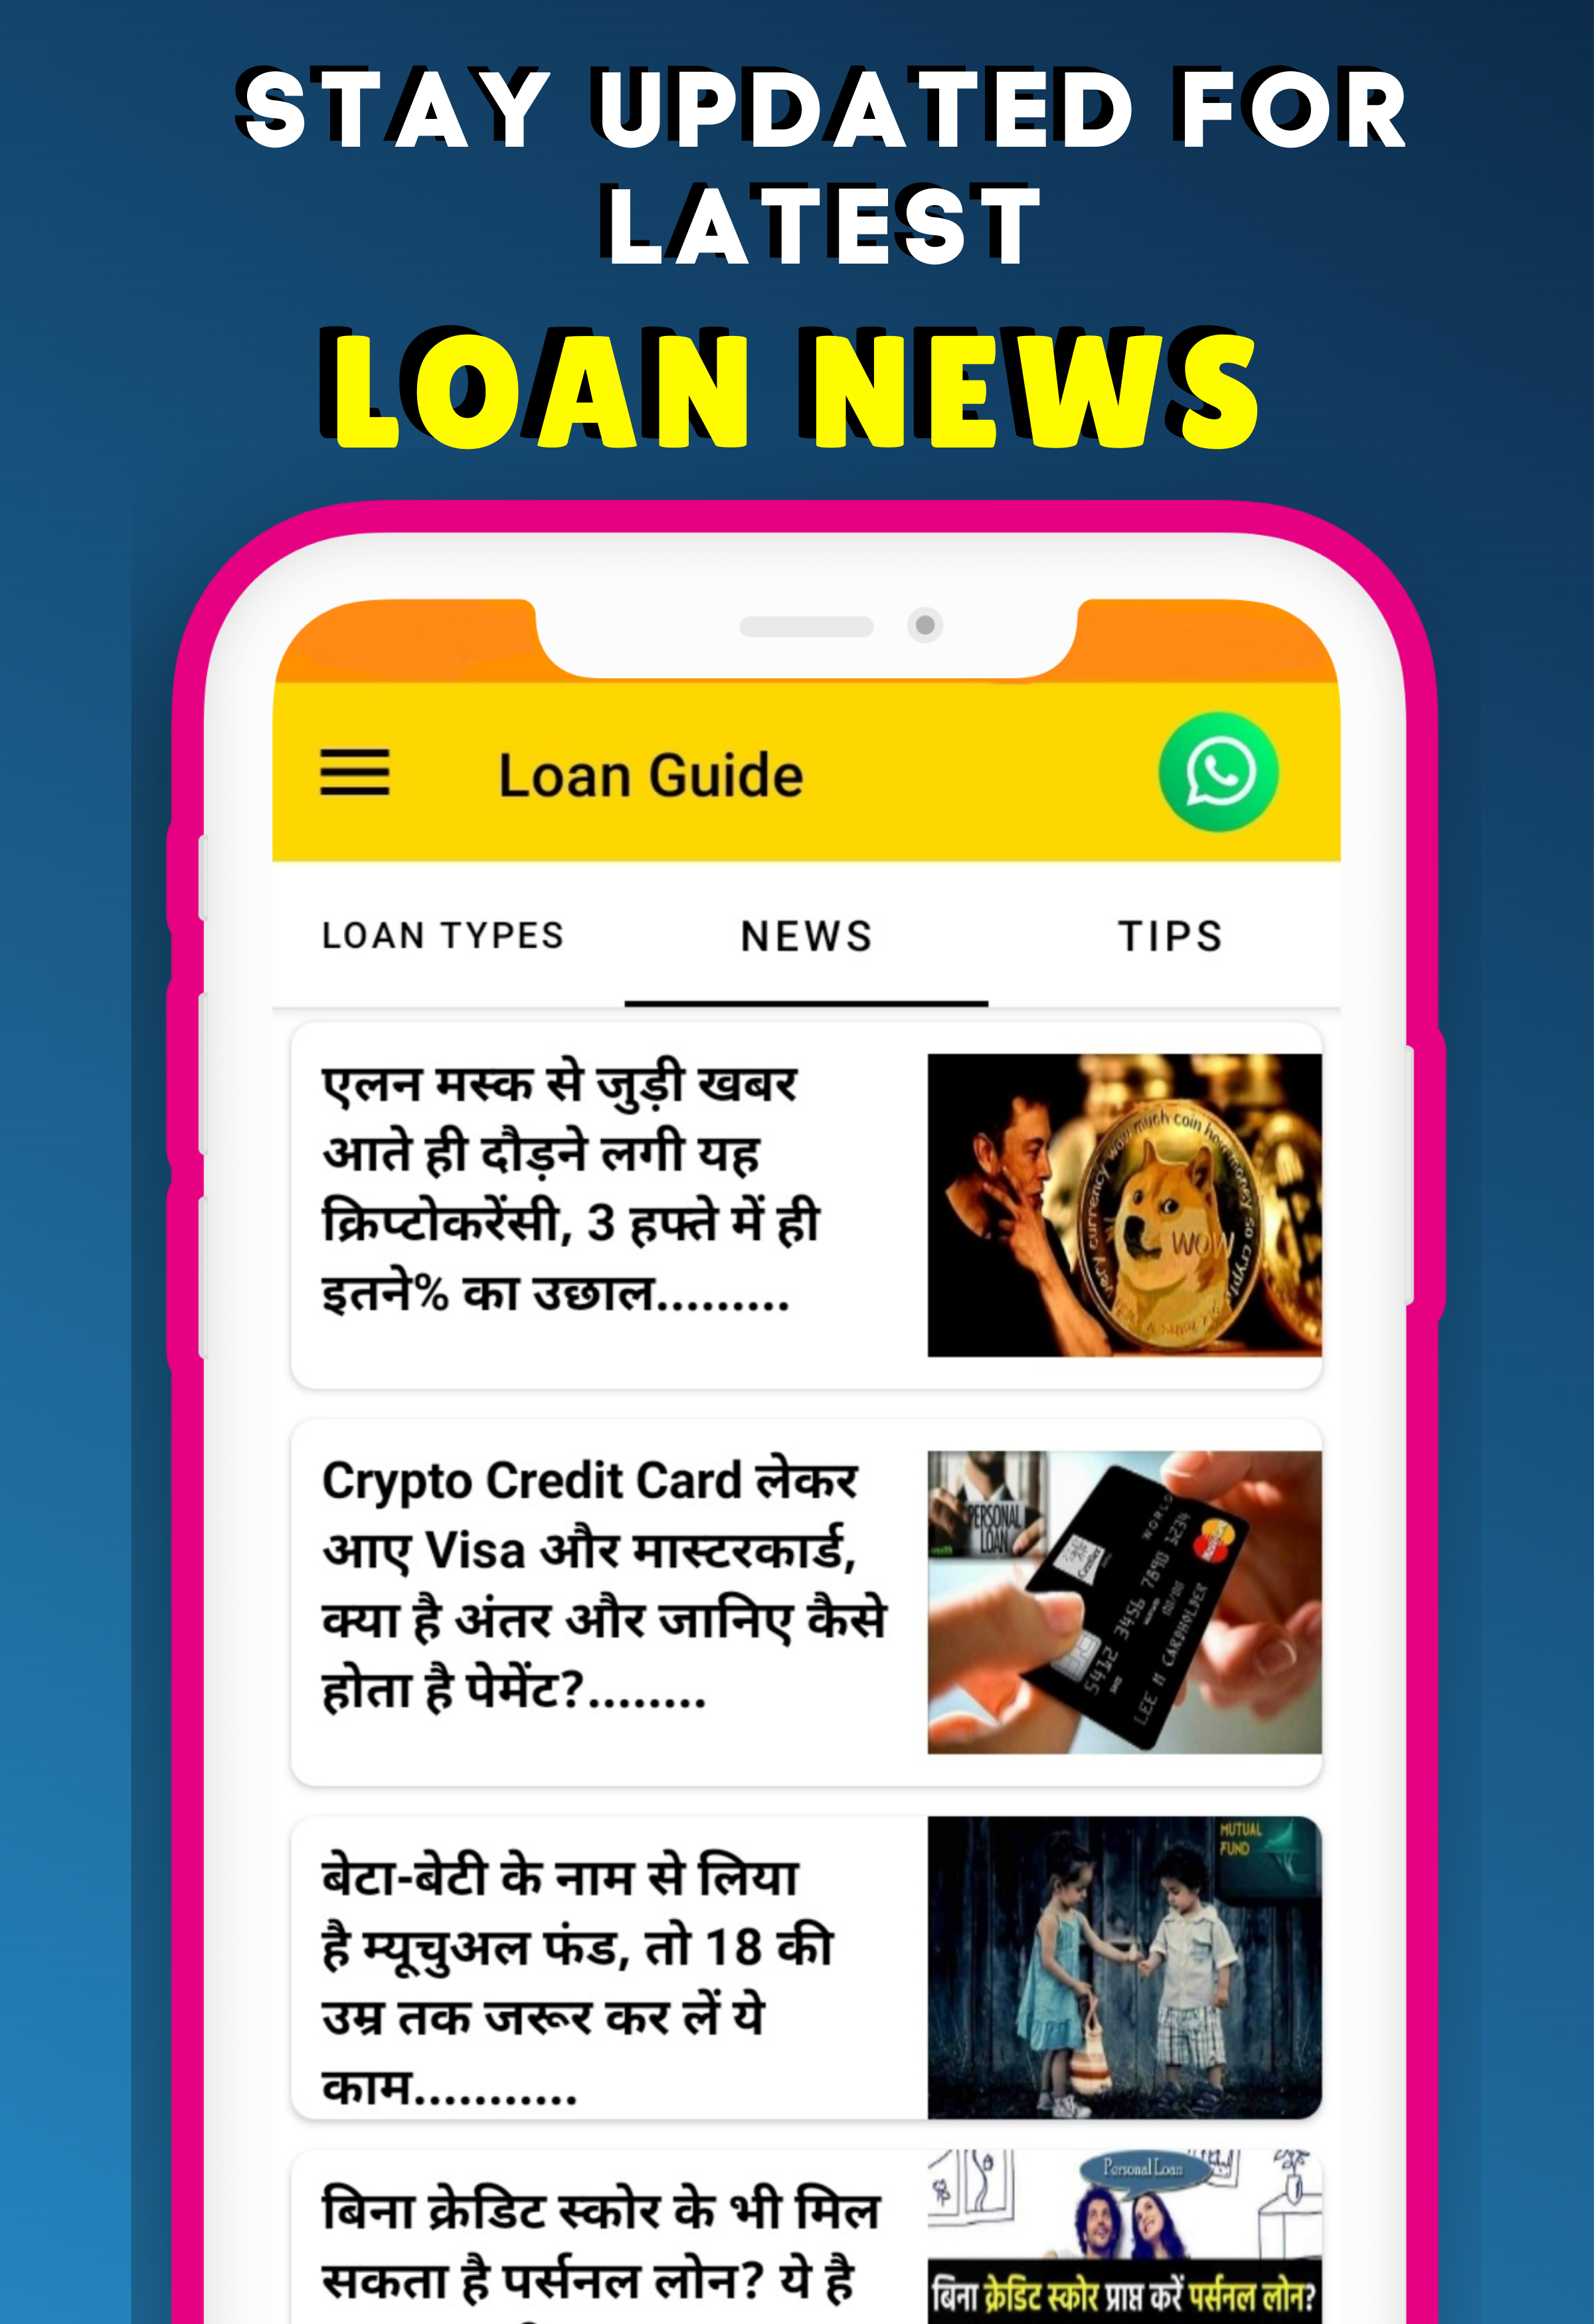 Instant Loan Guide App